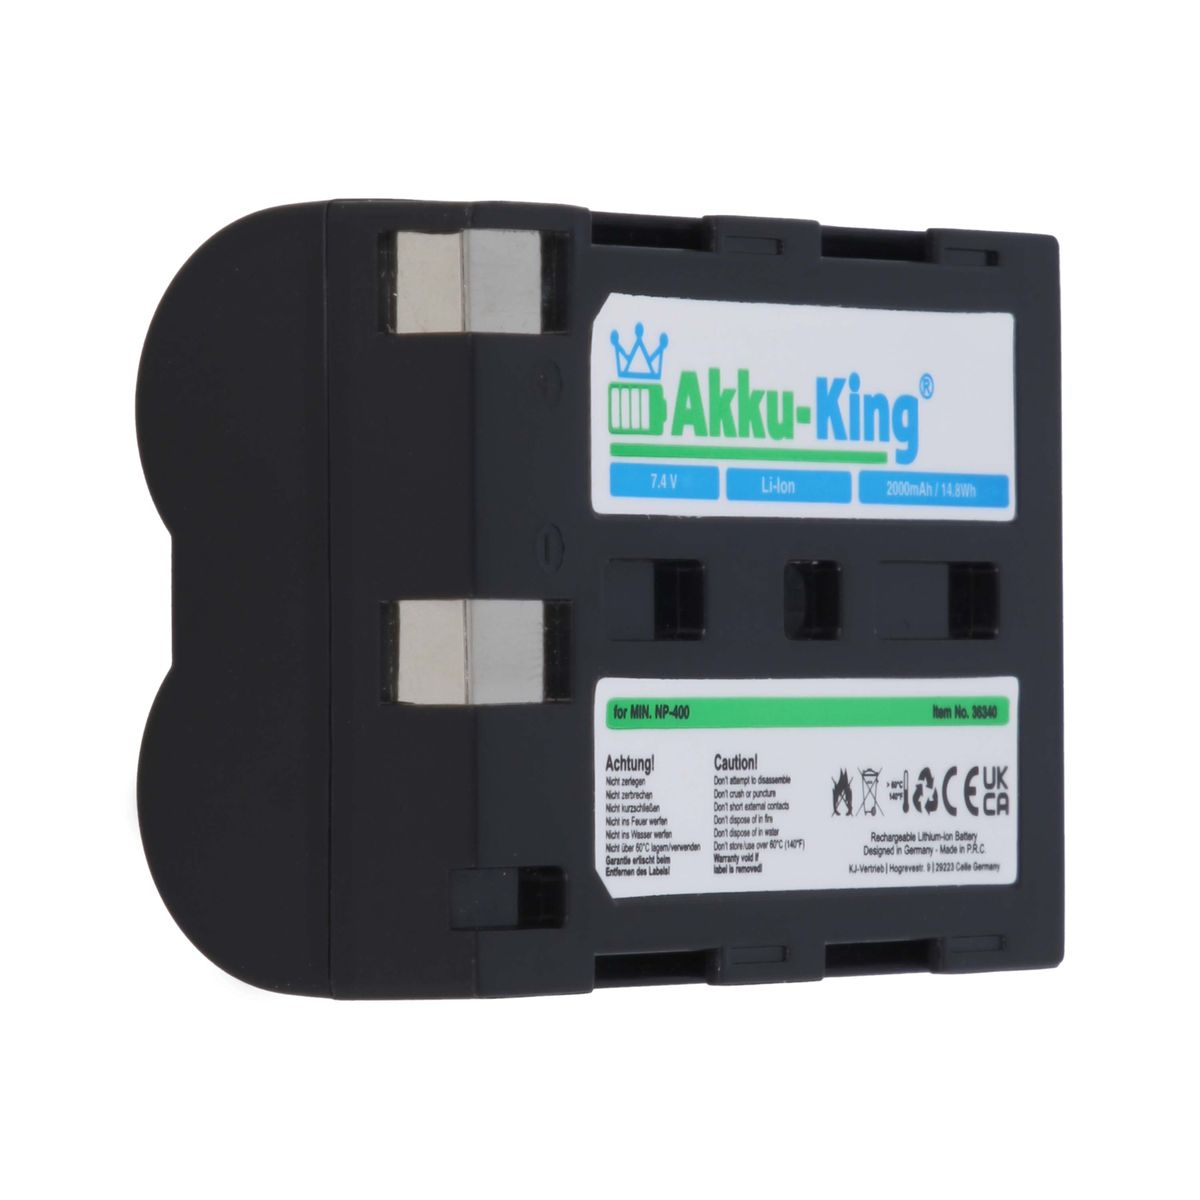 AKKU-KING Akku kompatibel mit Minolta 7.4 Volt, Kamera-Akku, Li-Ion NP-400 2000mAh